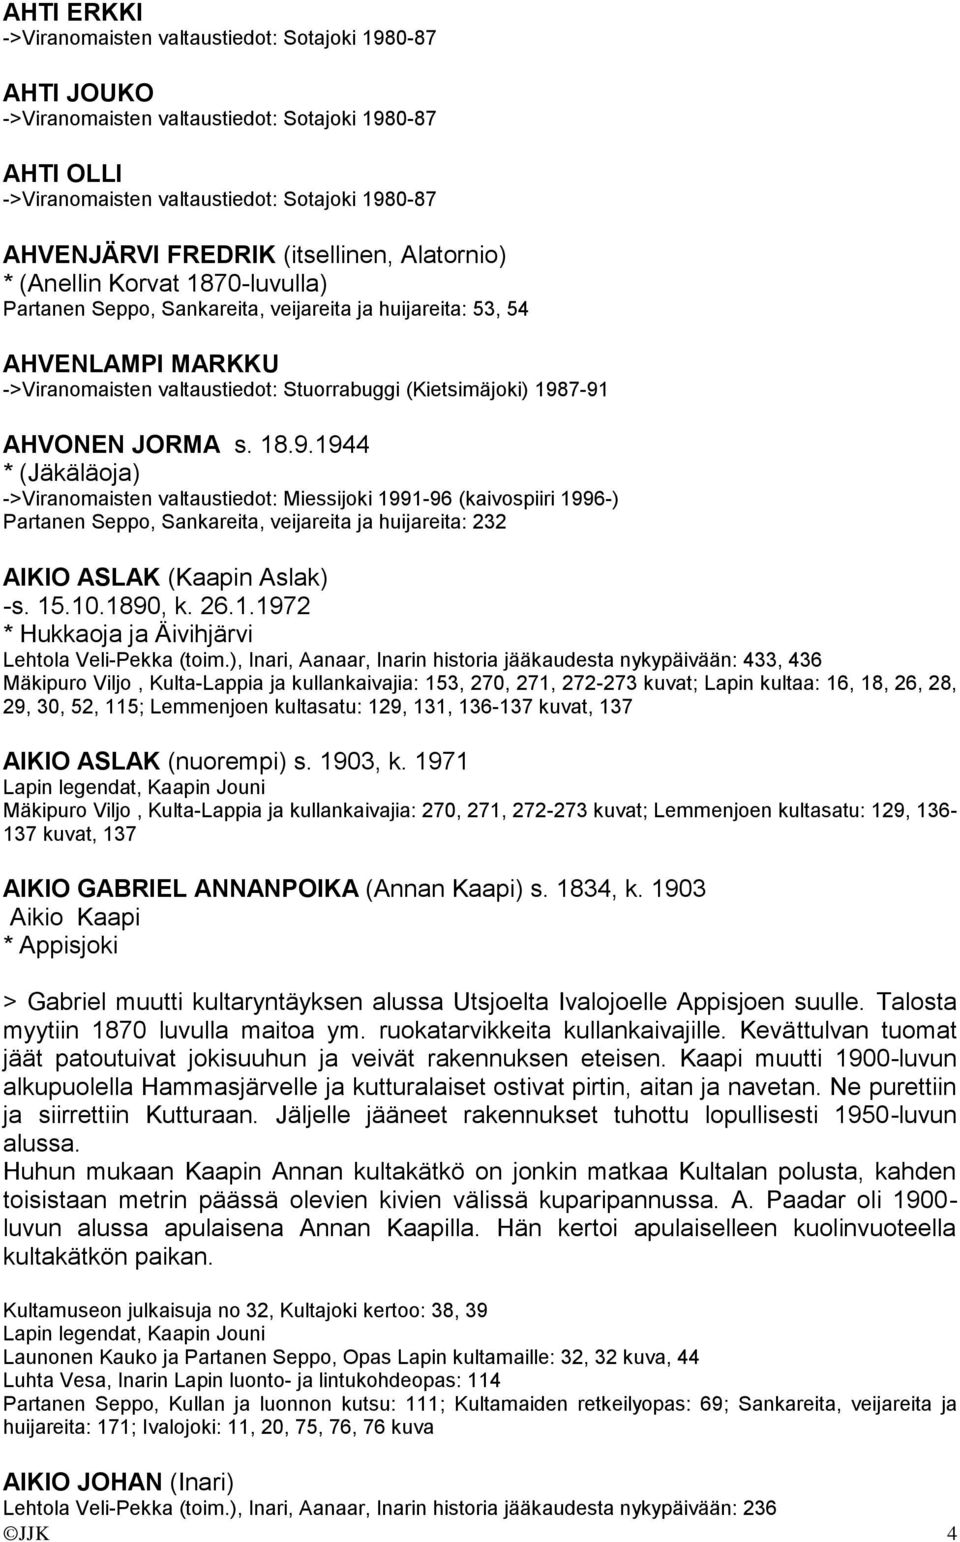 1987-91 AHVONEN JORMA s. 18.9.1944 * (Jäkäläoja) ->Viranomaisten valtaustiedot: Miessijoki 1991-96 (kaivospiiri 1996-) Partanen Seppo, Sankareita, veijareita ja huijareita: 232 AIKIO ASLAK (Kaapin Aslak) -s.